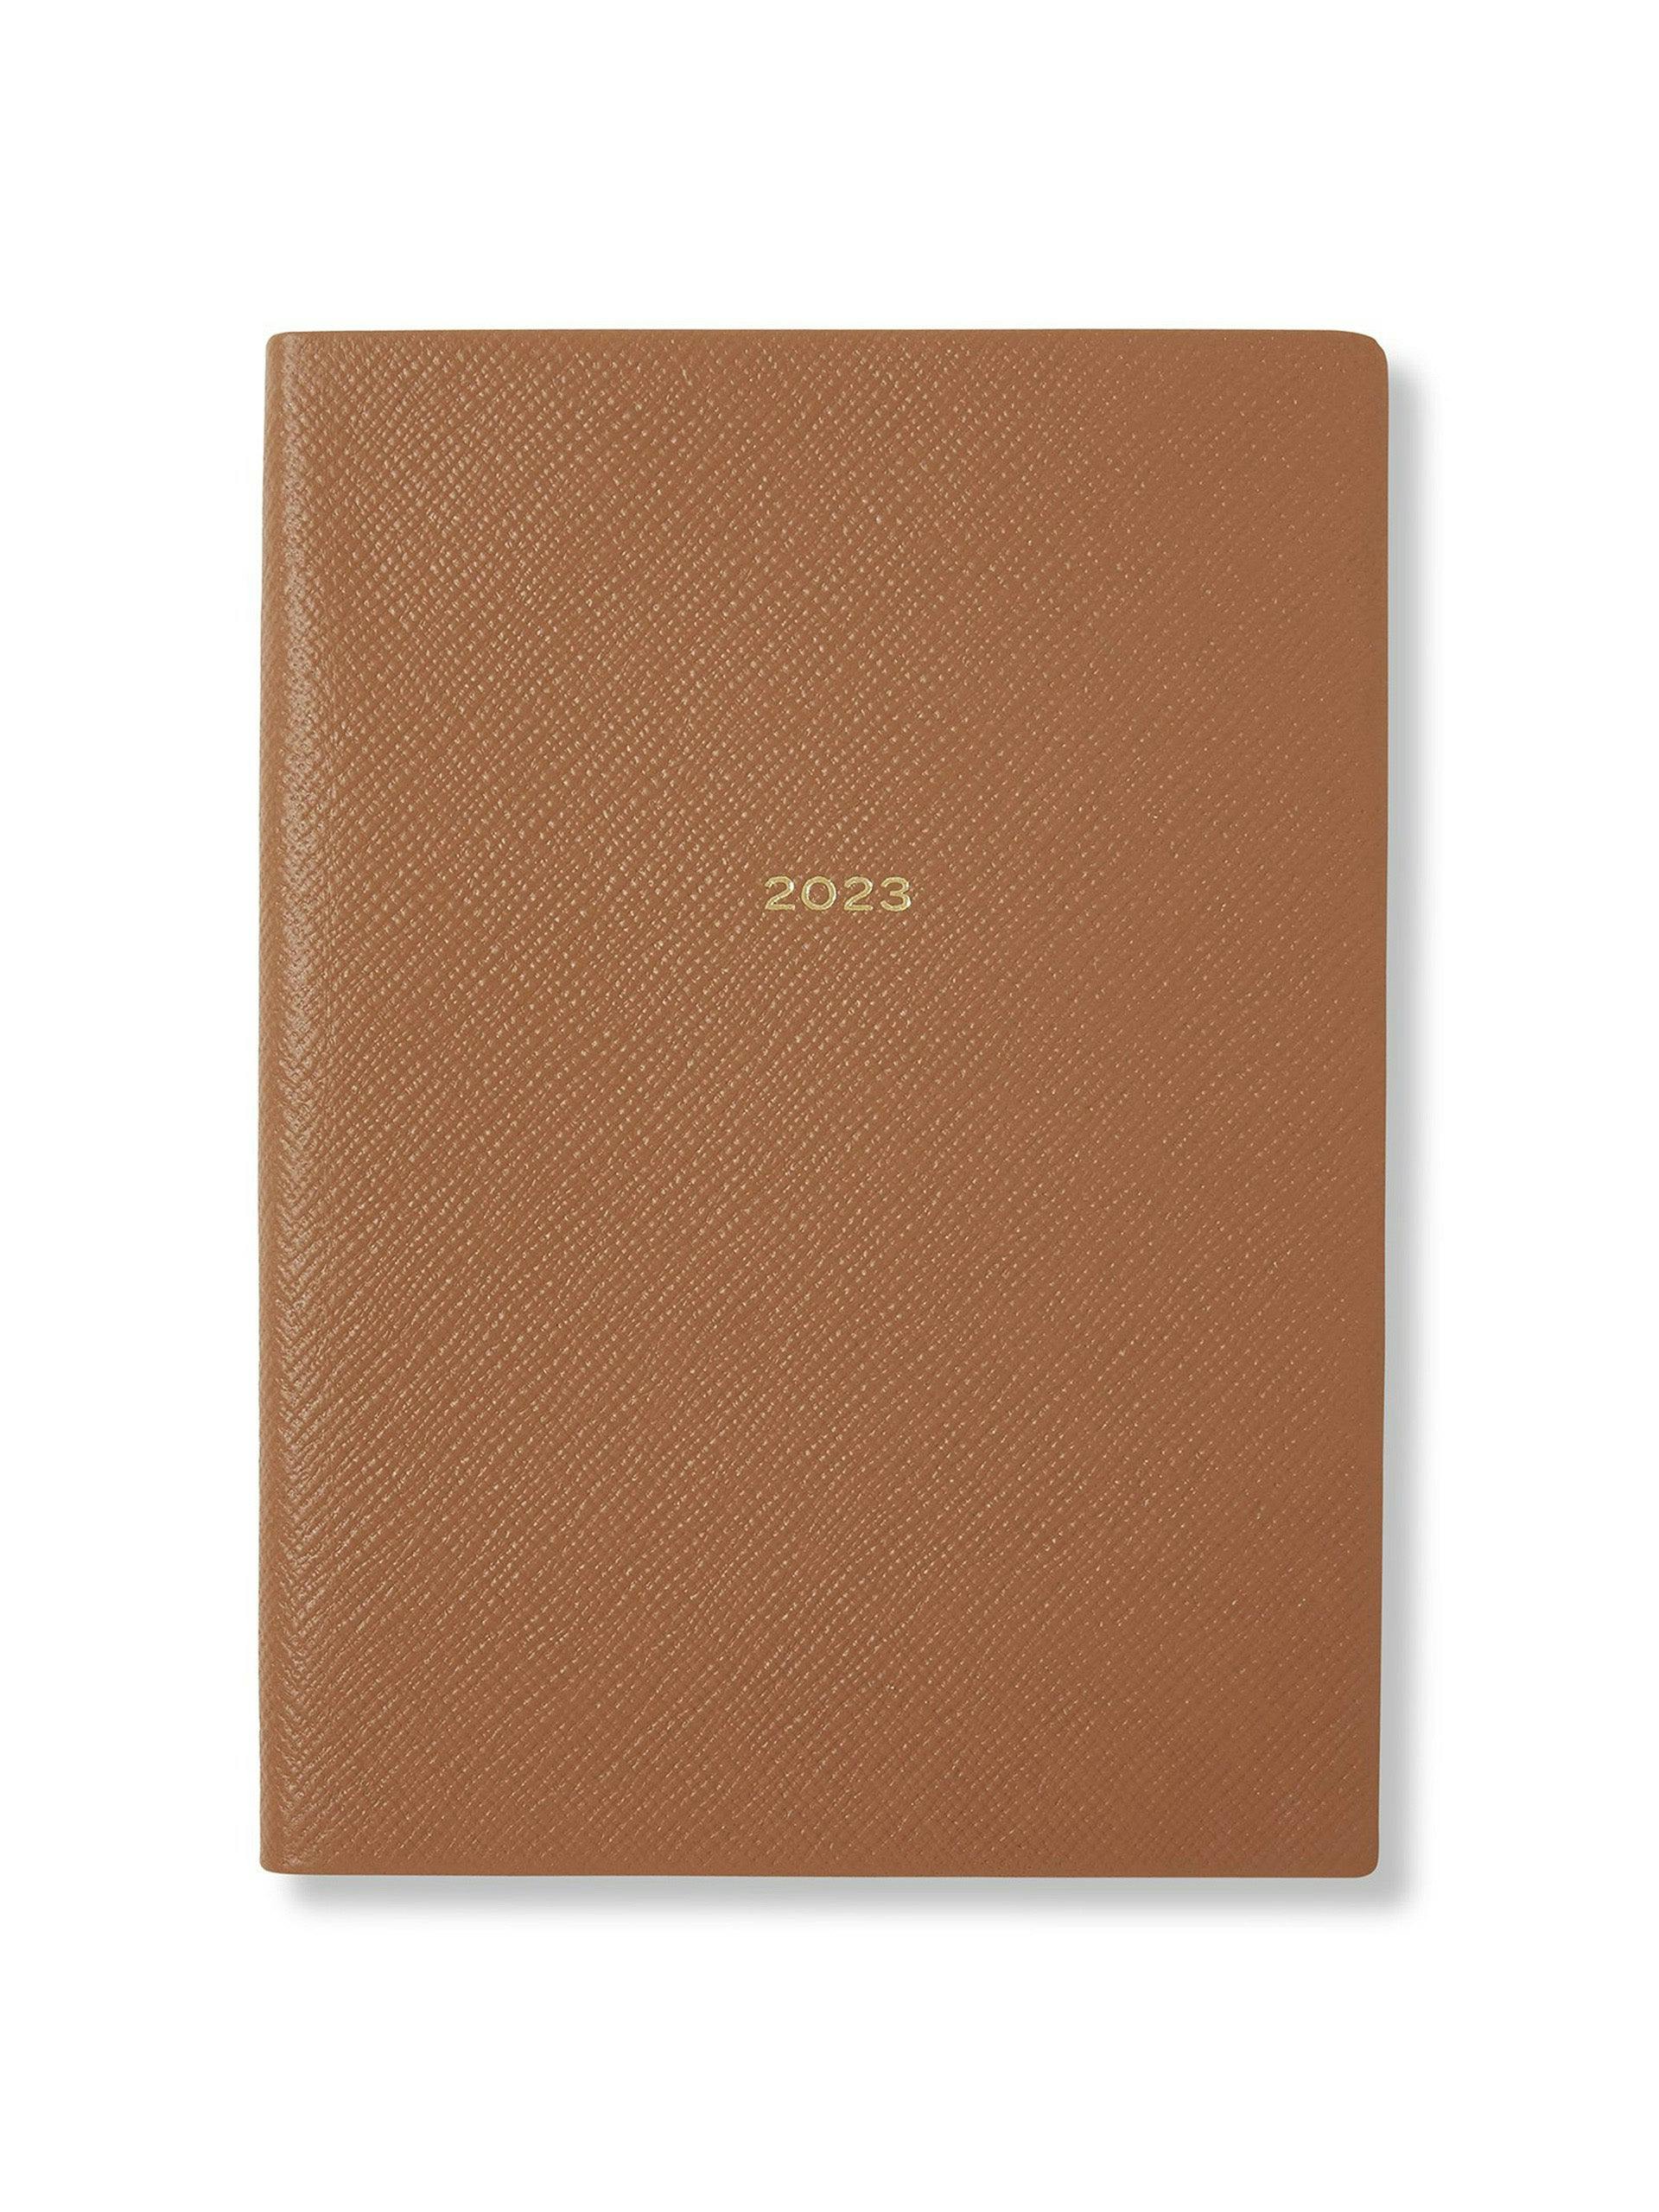 2023 Soho diary in Panama leather